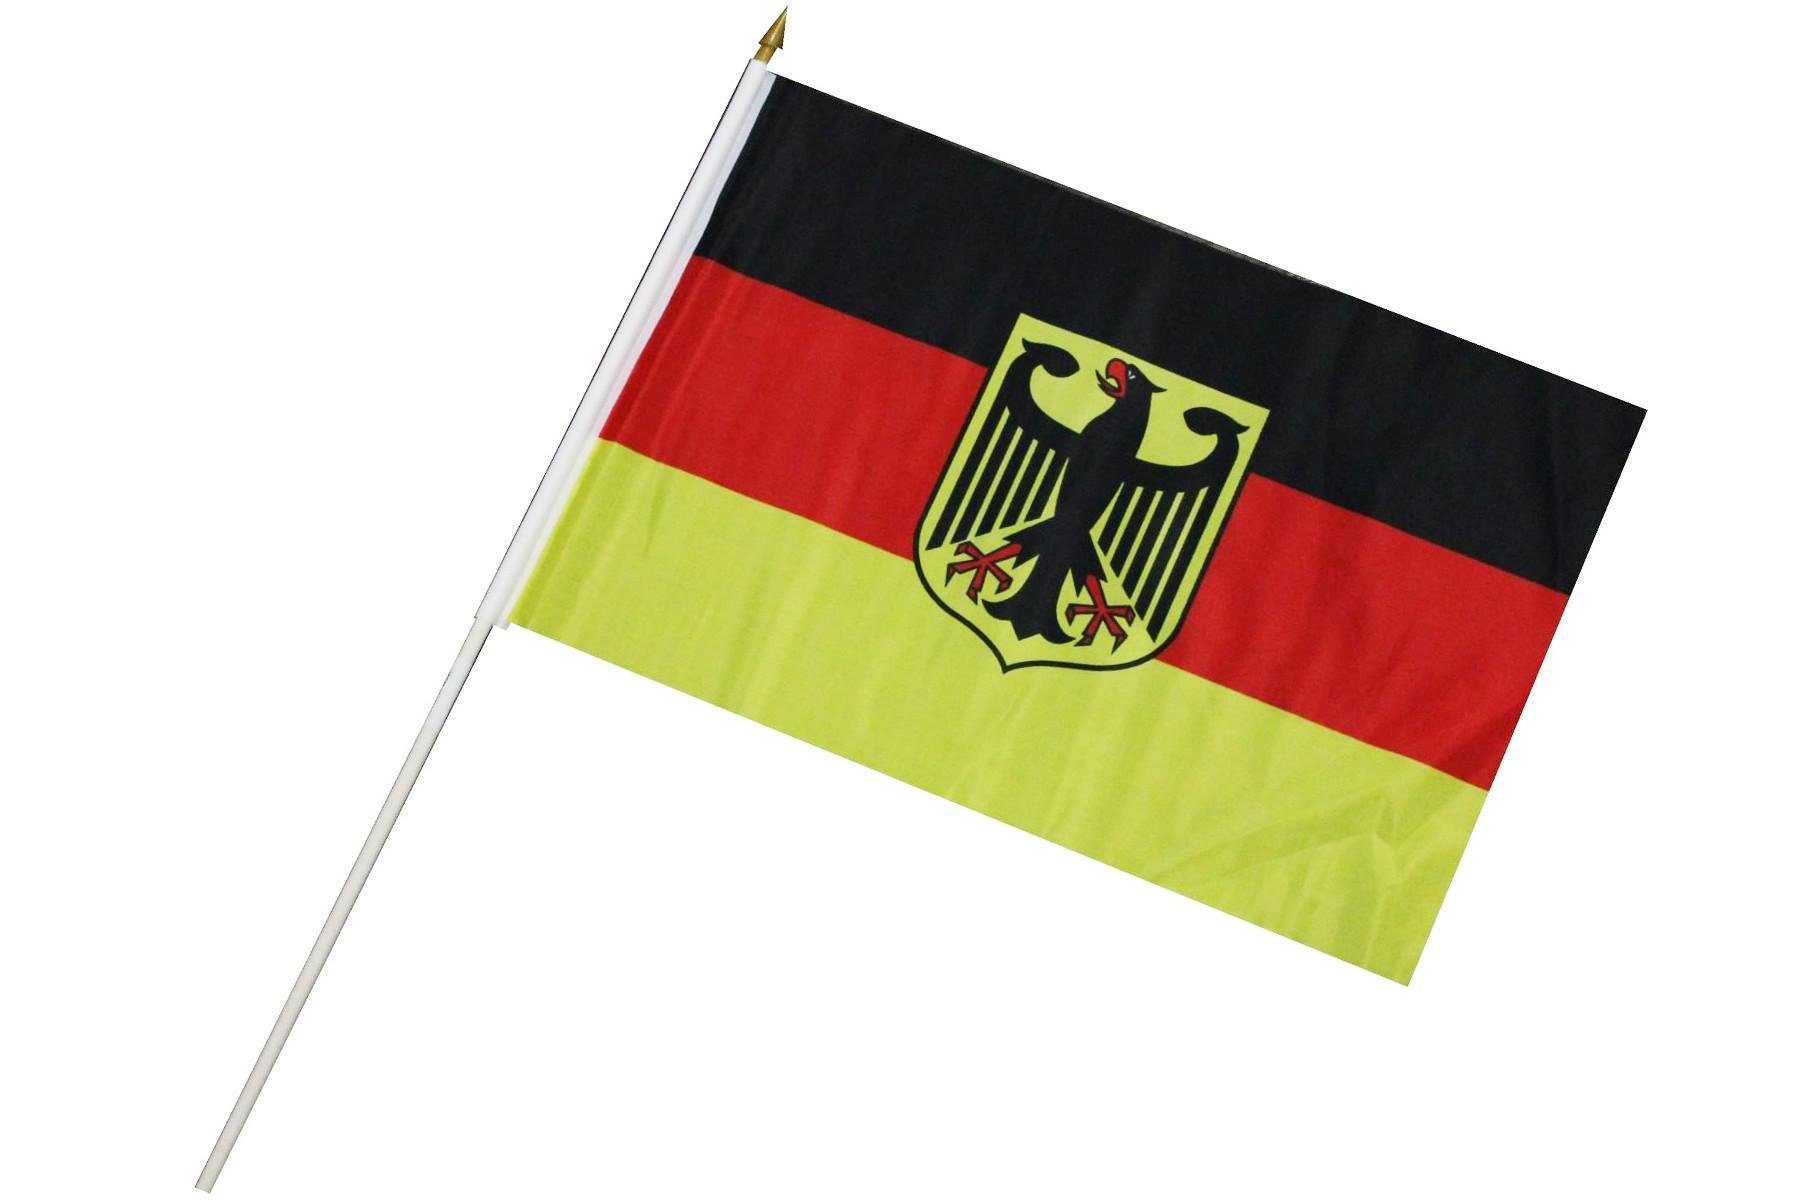 ELLUG Flagge Fahne Flagge 30 x 45cm mit Holzstab Höhe 60cm Handfahne Stockflagge Banner Fan Deutschland mit Adler